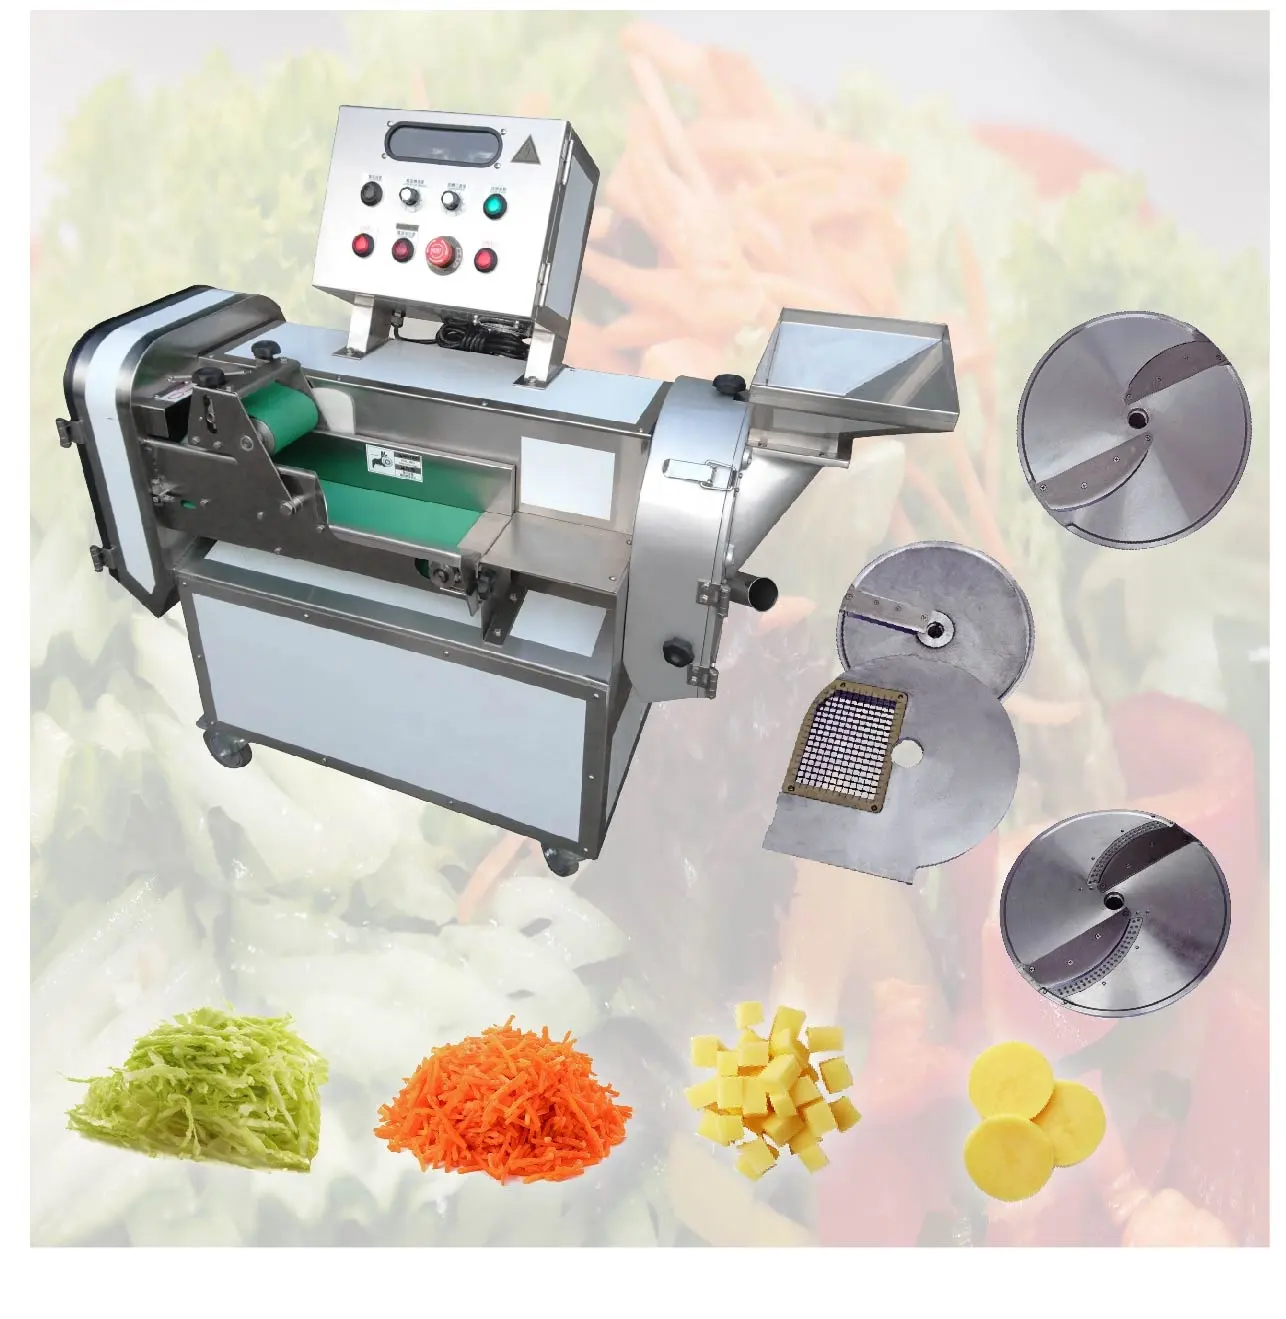 野菜切断機工業用自動食品加工機